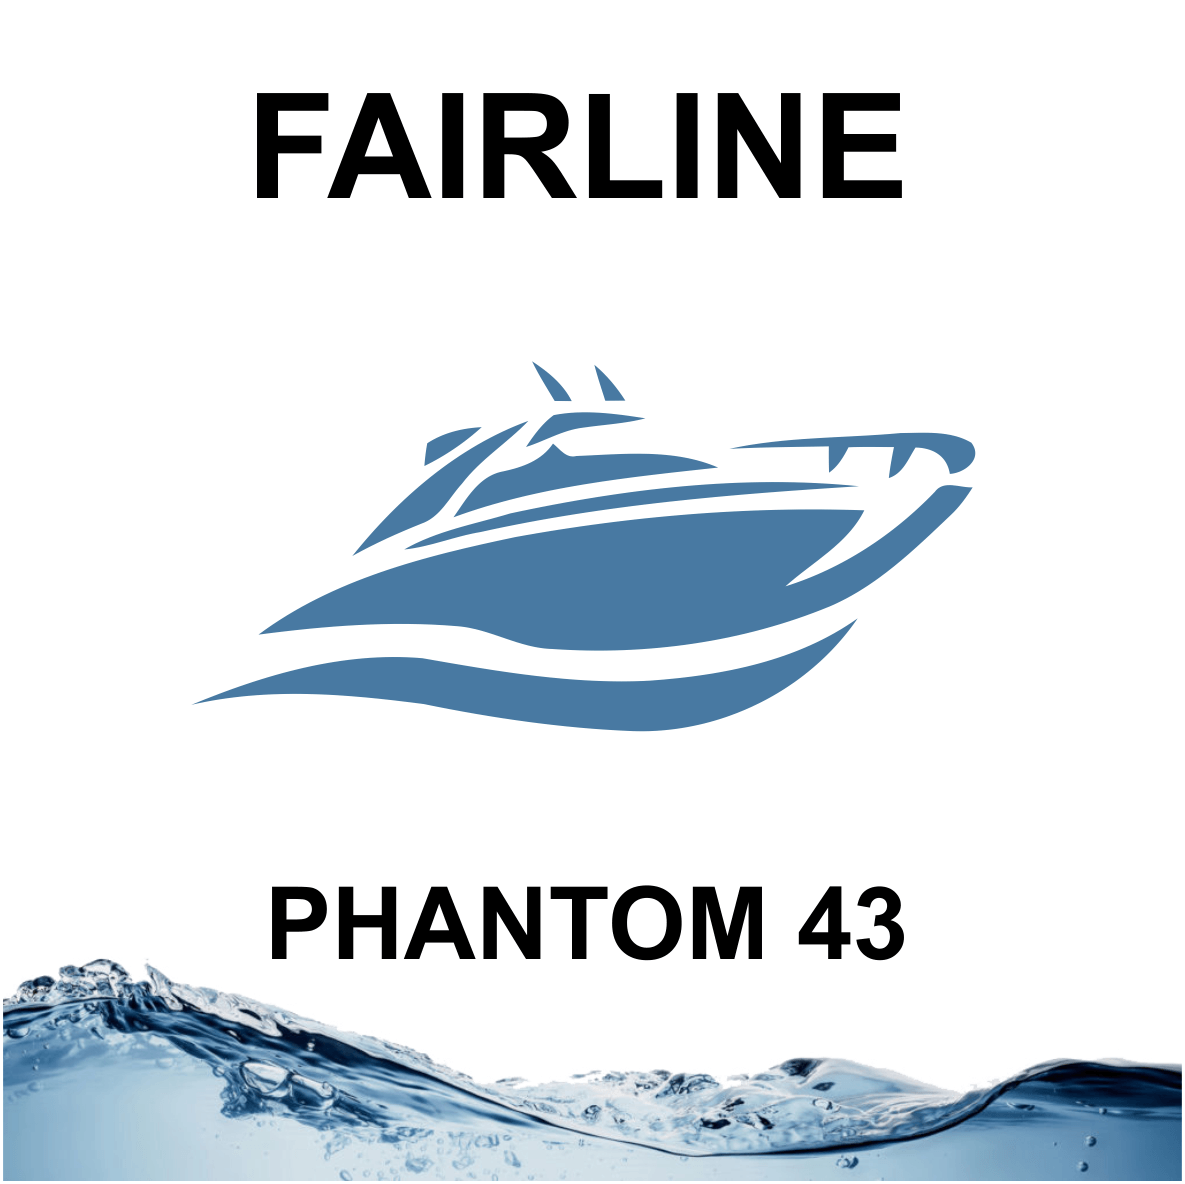 Fairline Phantom 43